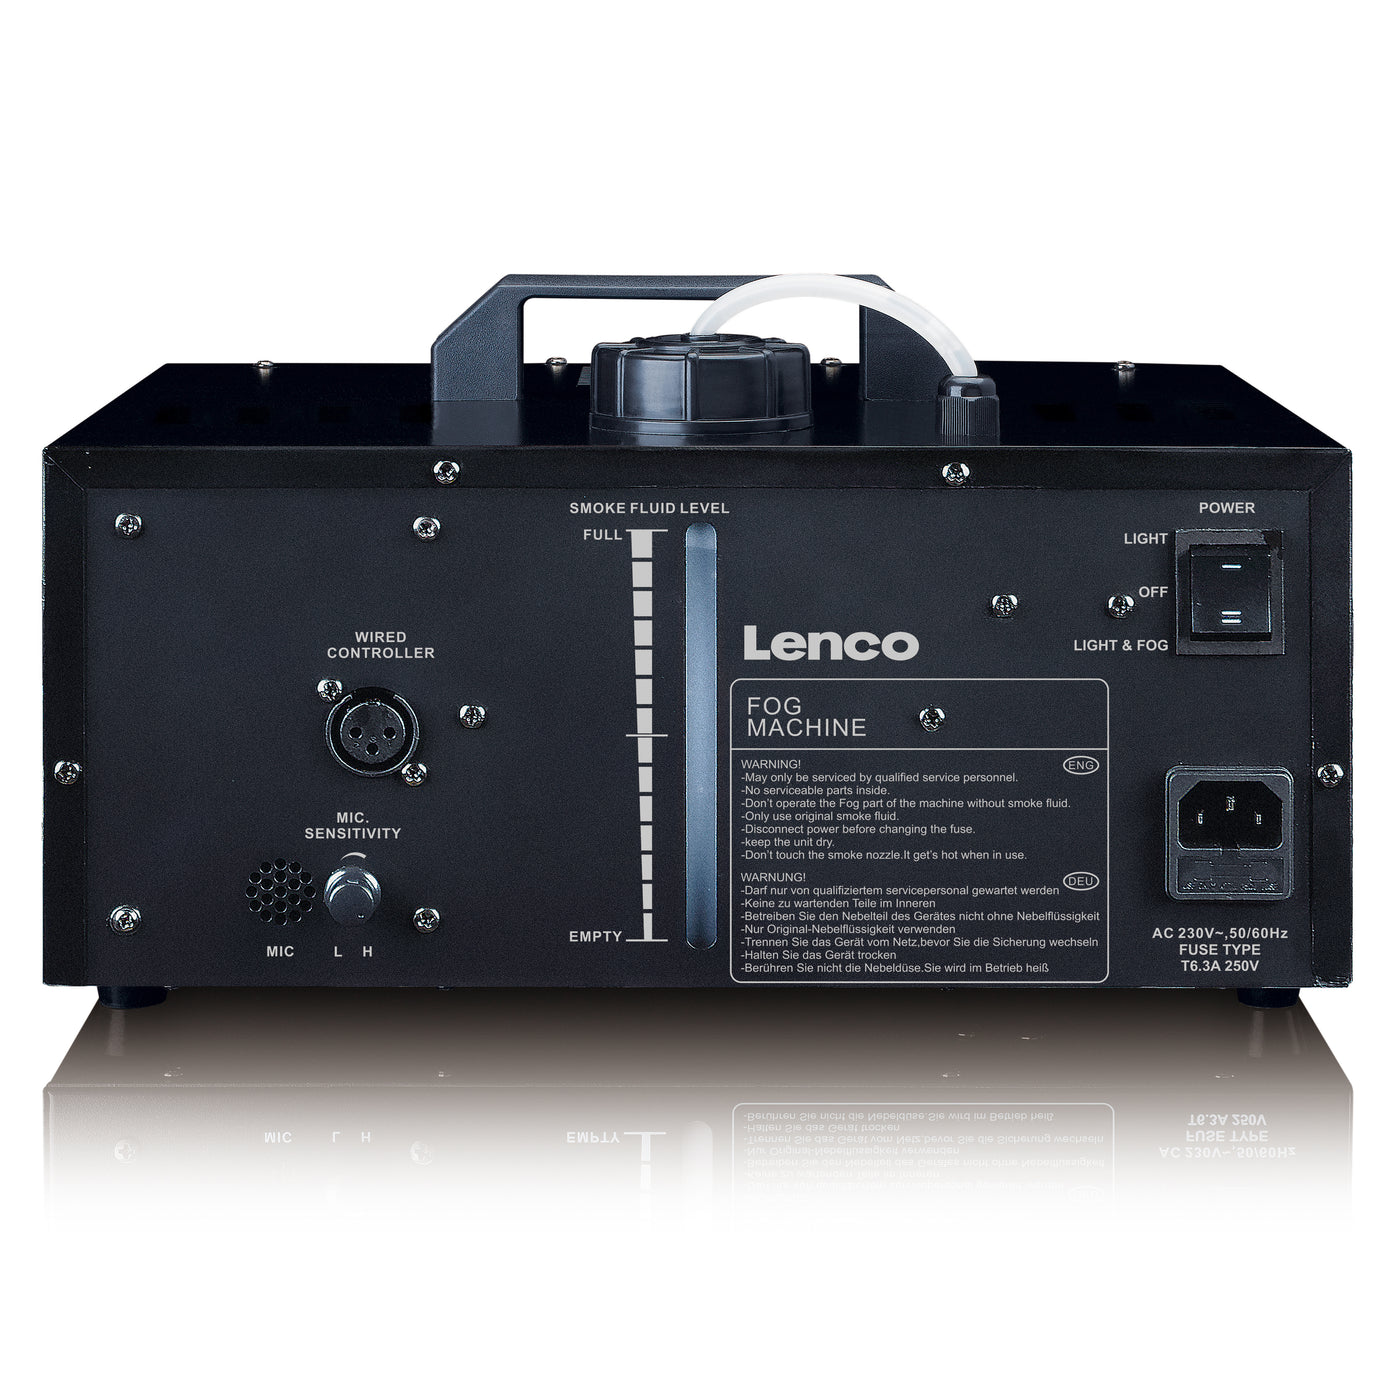 LENCO LFM-220BK - Lampki imprezowe LED z podwójną matrycą RGB